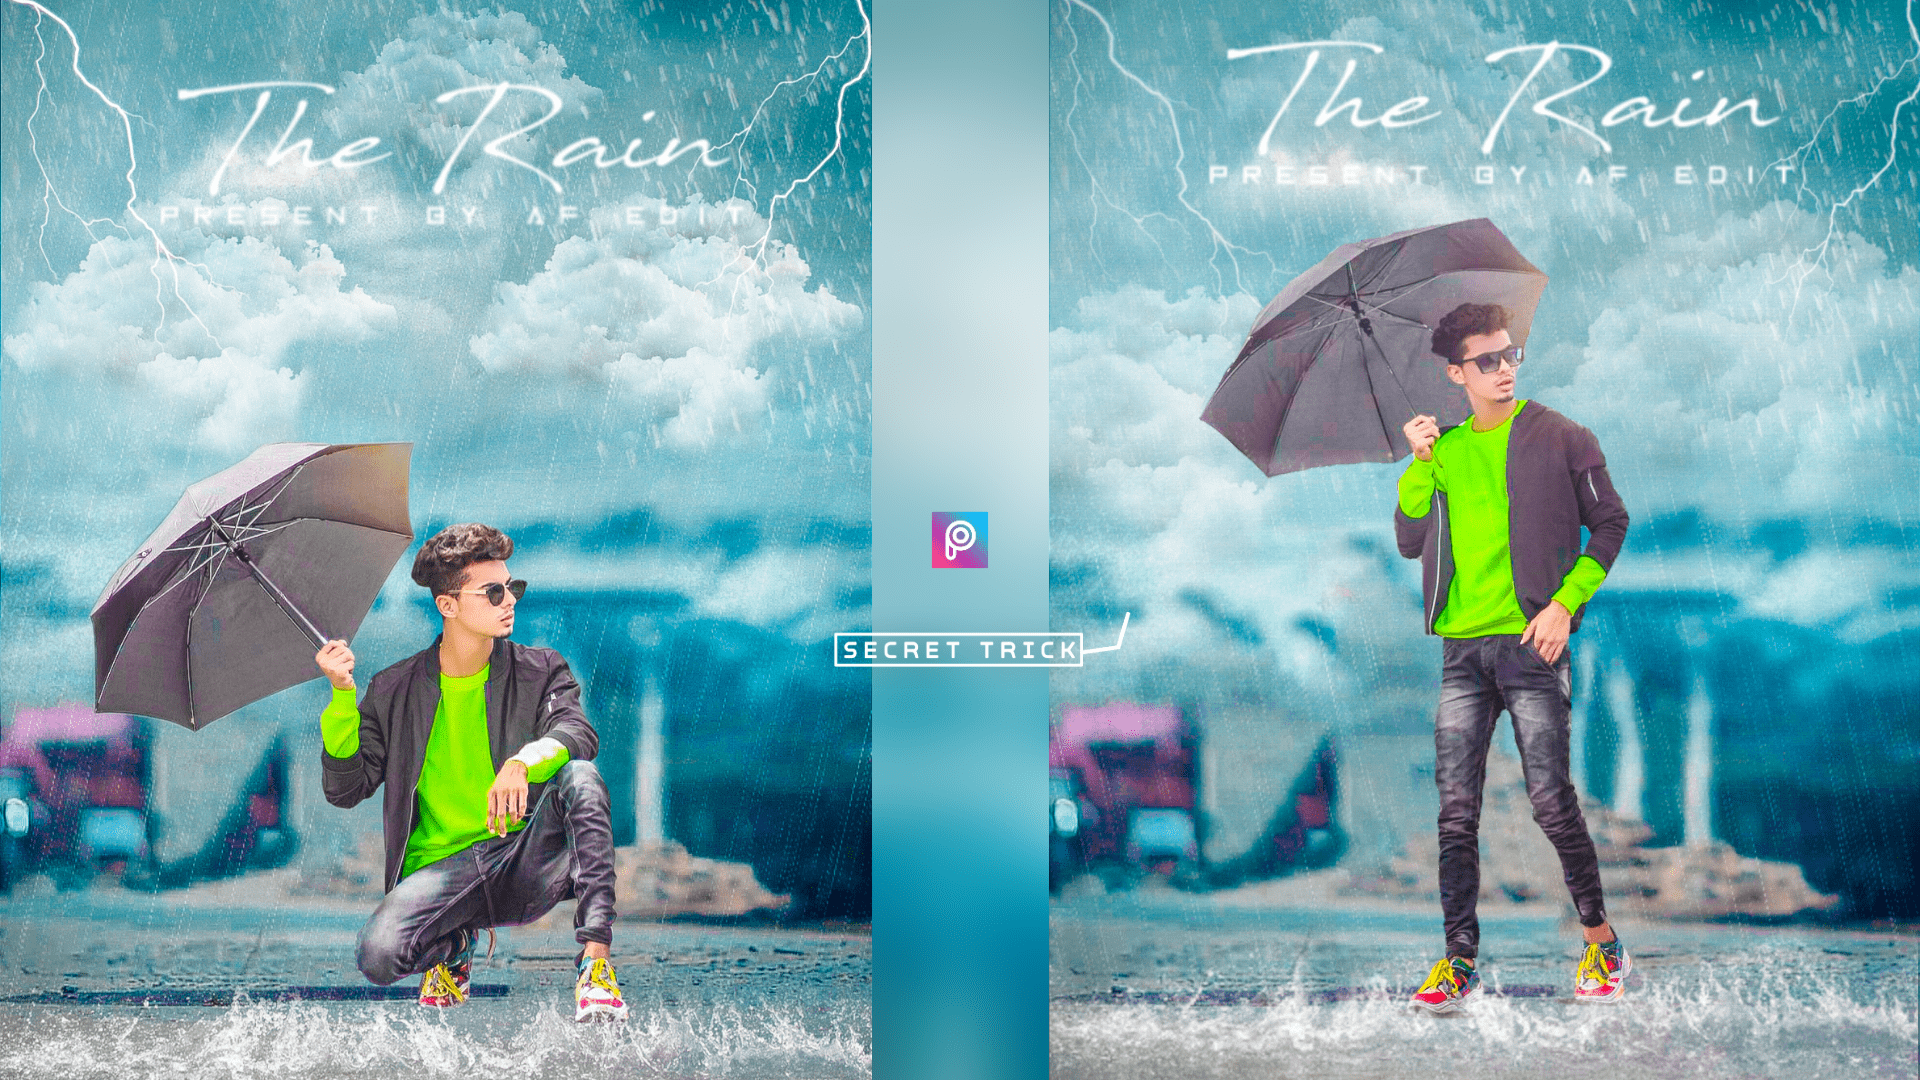 PicsArt New Rain Concept Photo Editing | Instagram Viral Photo Editing |  PicsArt Editing Archives - Tahir Editz